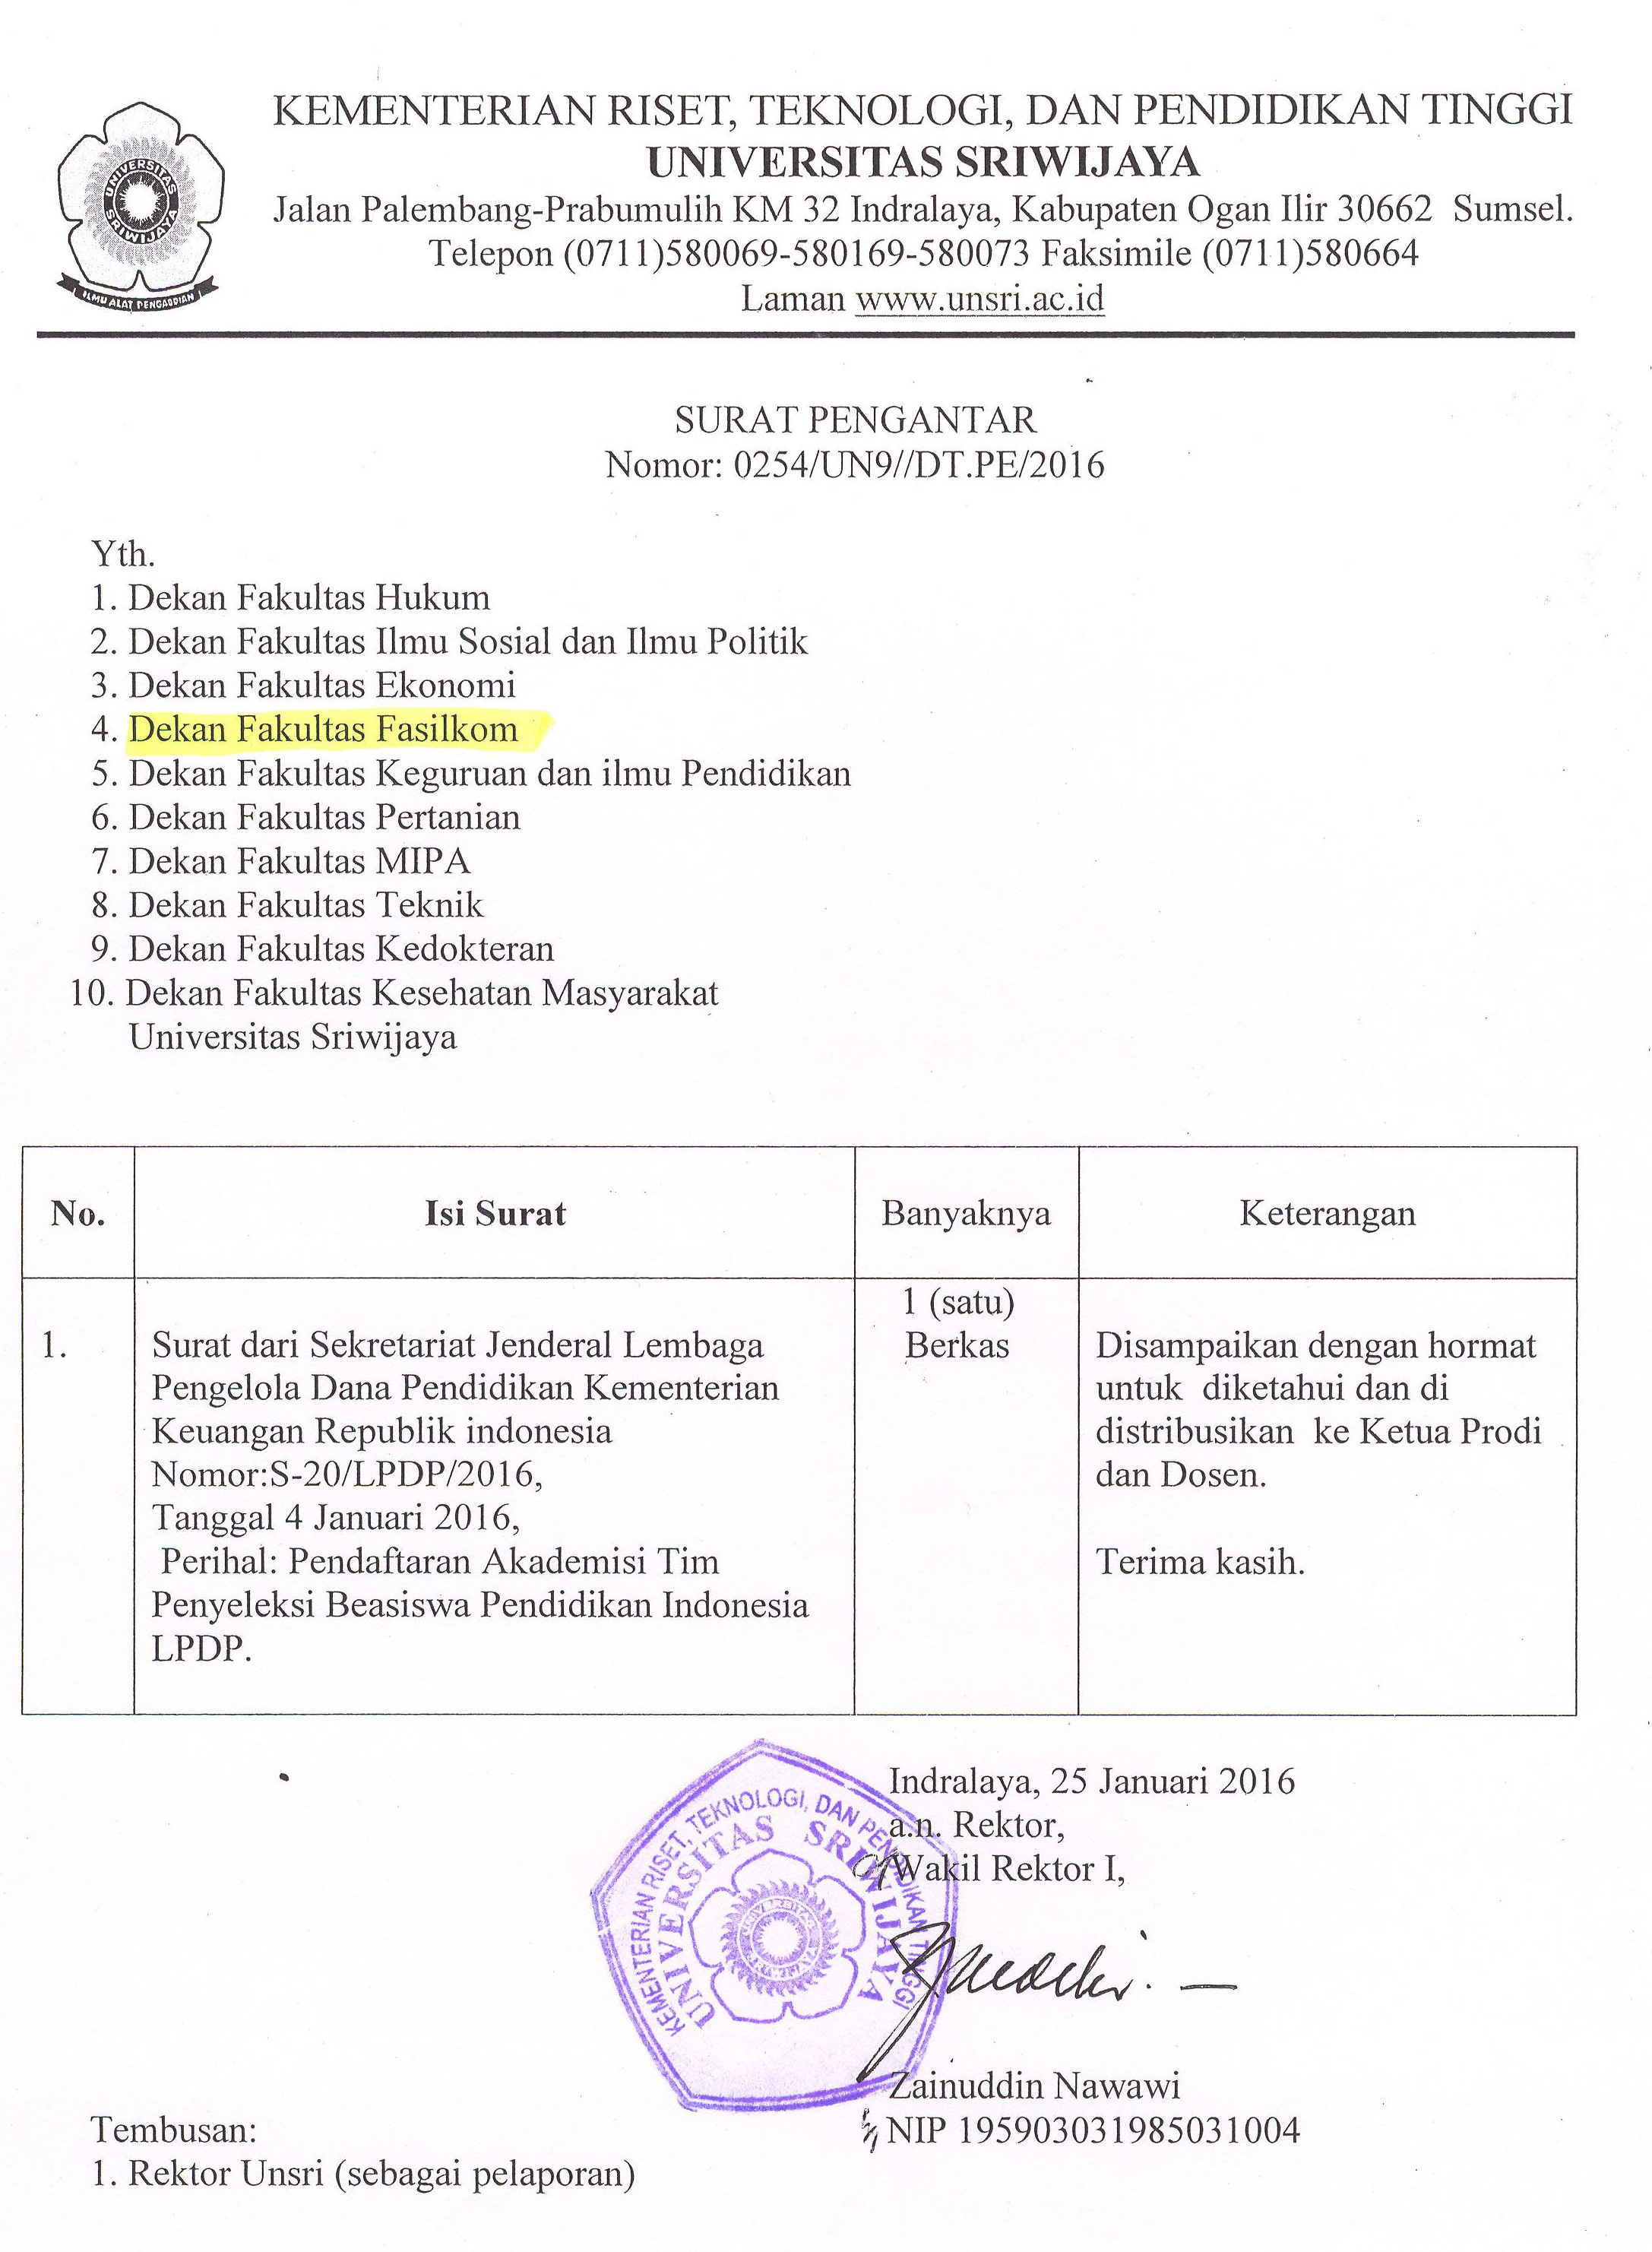 Pendaftaran Akademisi Tim Penyeleksi Beasiswa Pendidikan Indonesia LPDP